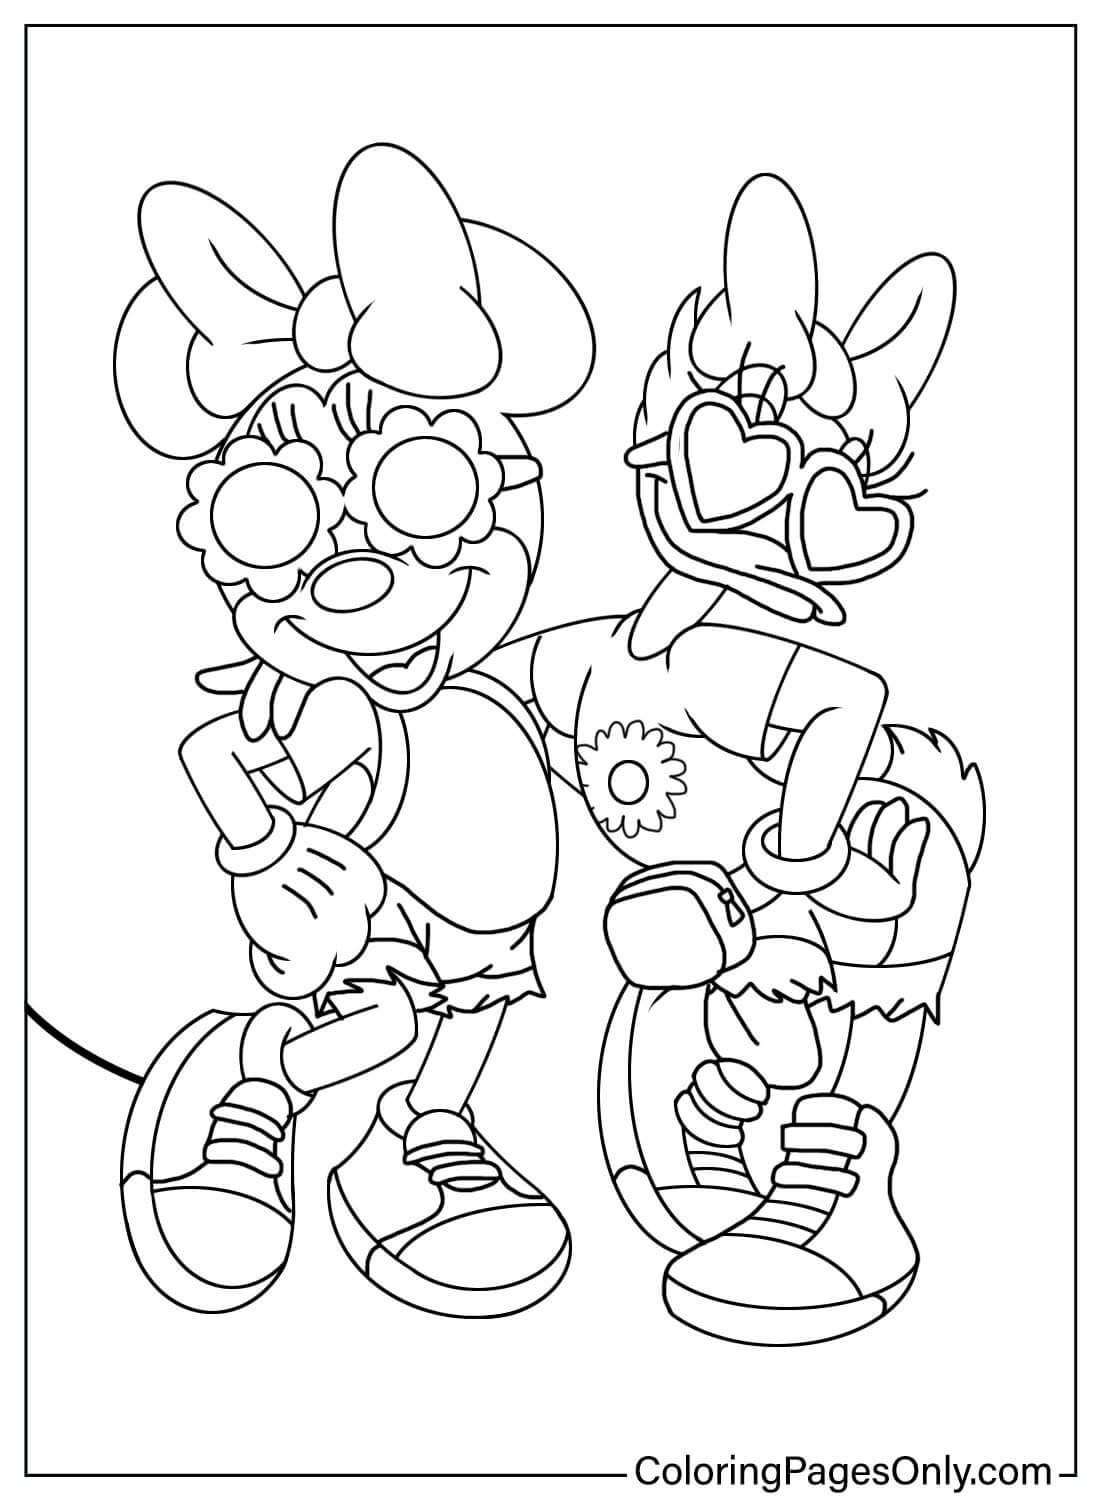 Página para colorear de Minnie Mouse y Daisy Duck de Daisy Duck